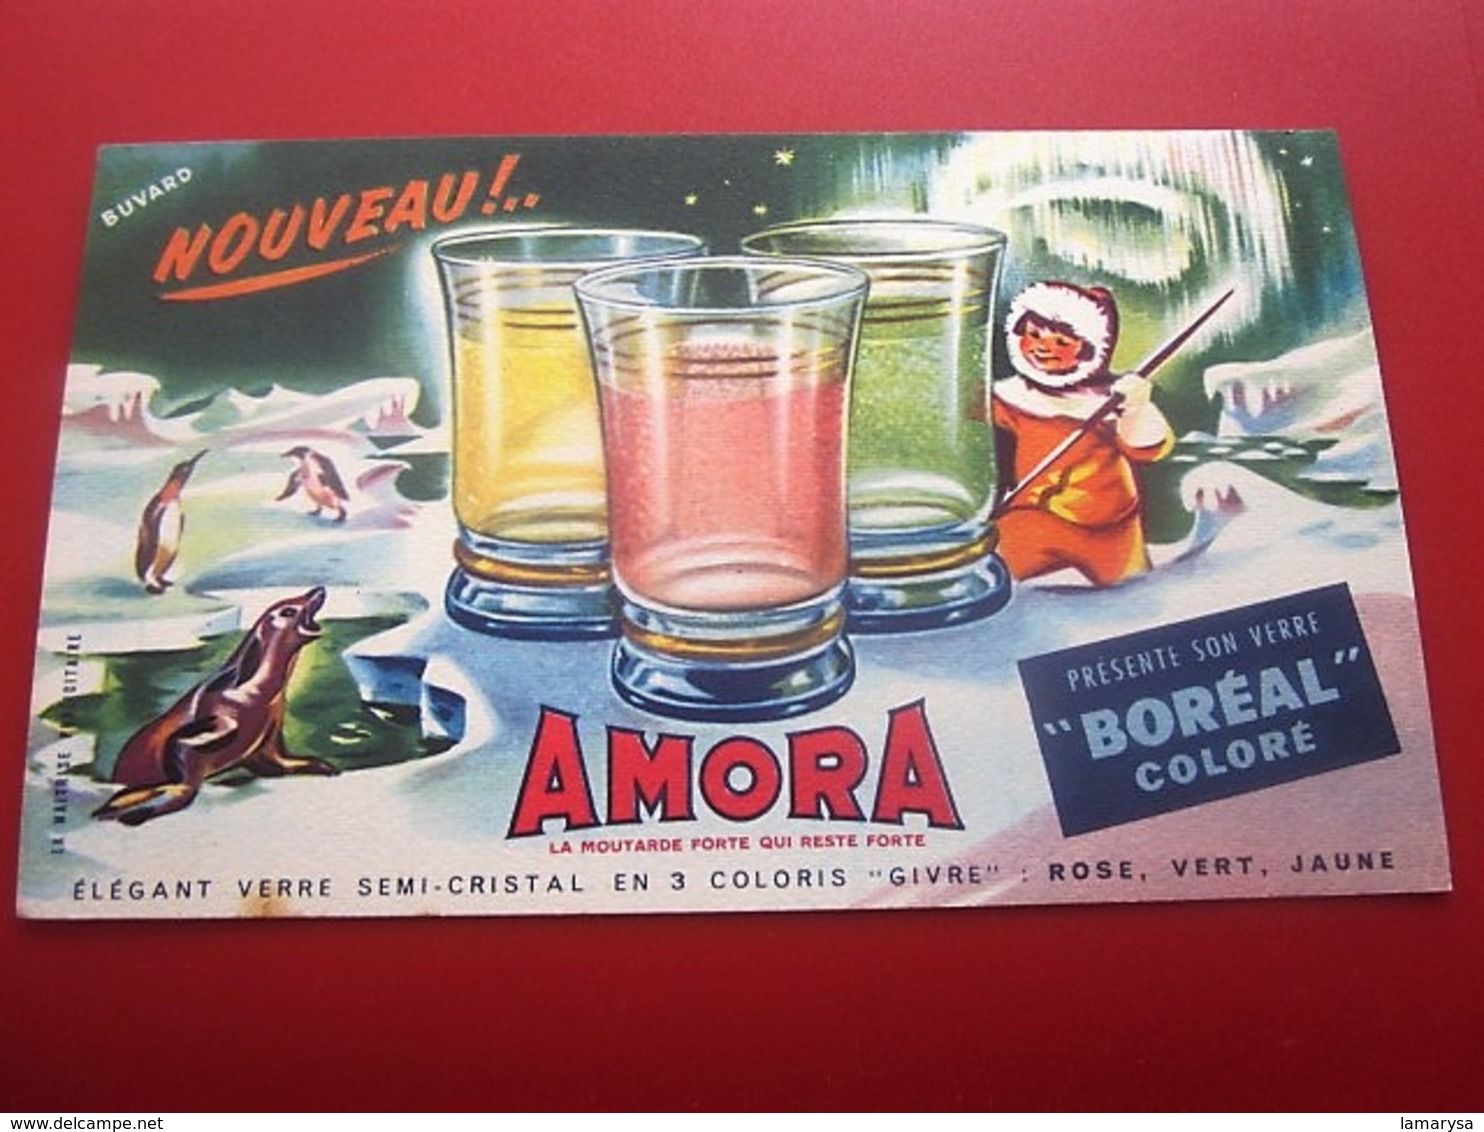 MOUTARDE AMORA VERRES BOREAL  - BUVARD Collection Illustré Publicitaire Publicité Alimentaire Moutarde - Moutardes